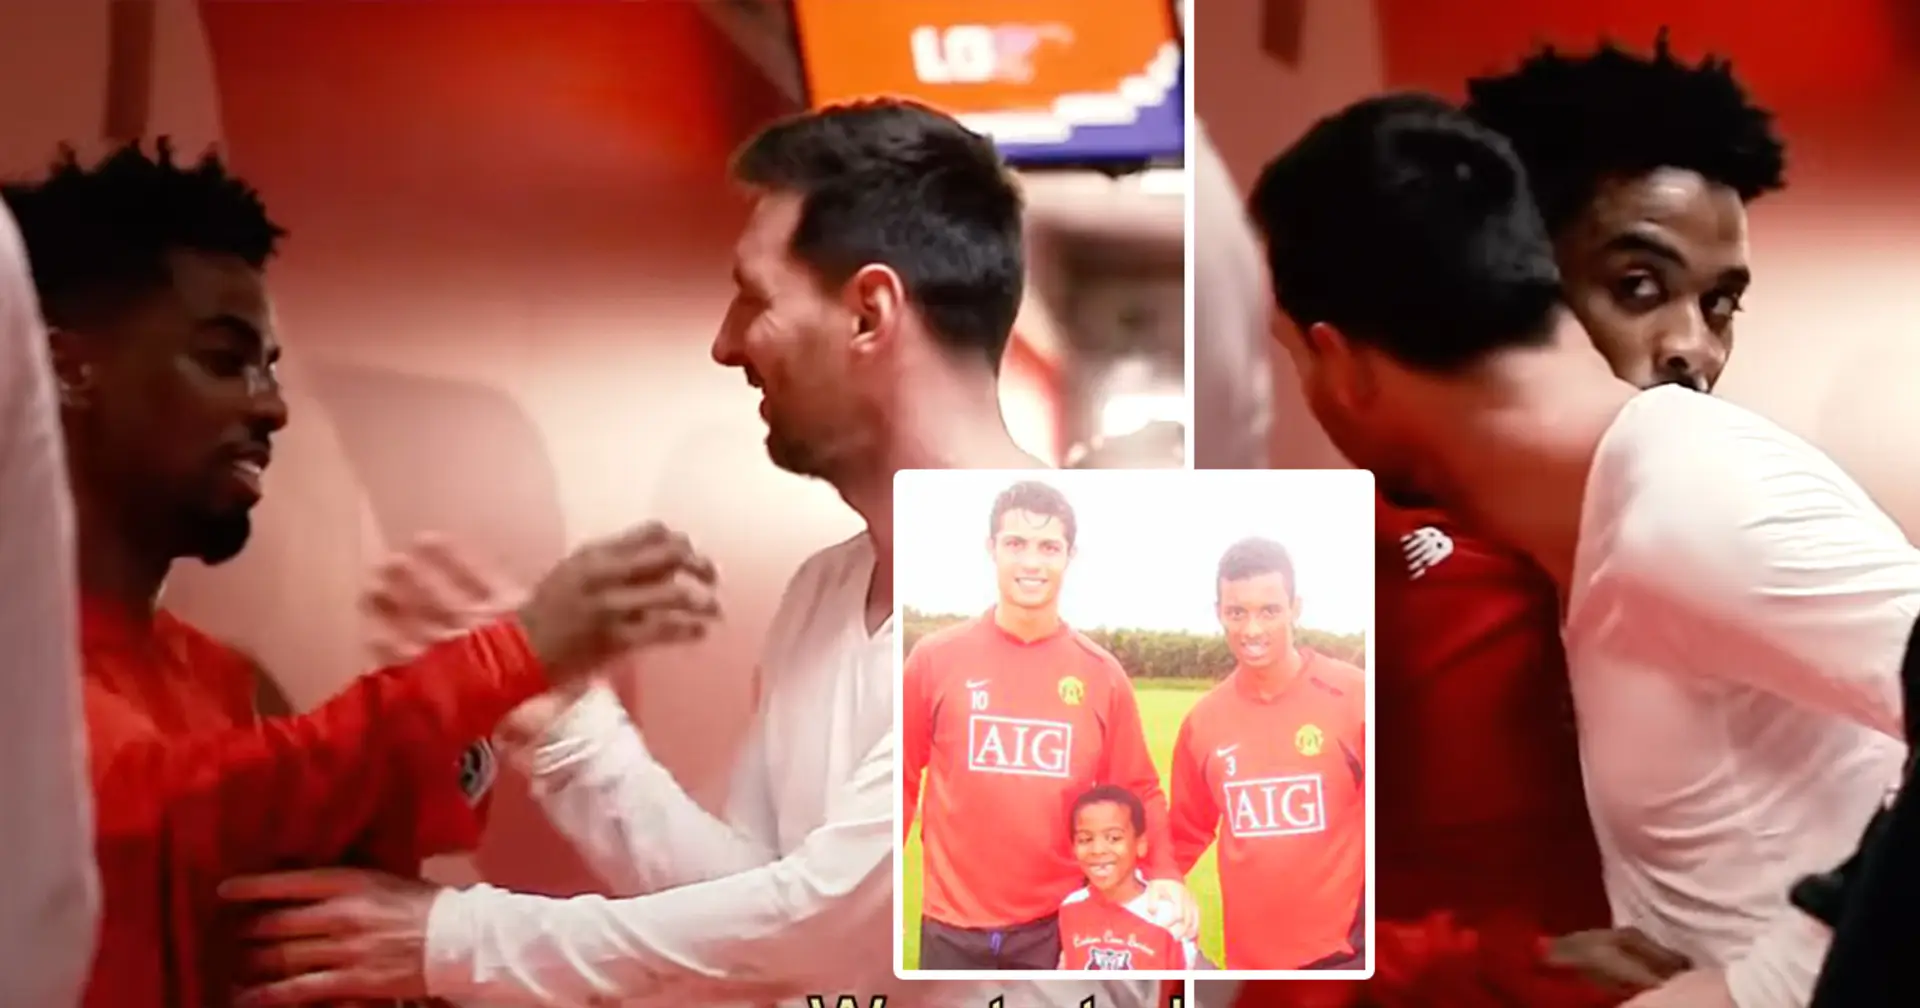 Le jeune lillois Angel Gomes a été choqué lorsque Lionel Messi lui a demandé d'échanger les maillots, c'est un fanboy de Ronaldo